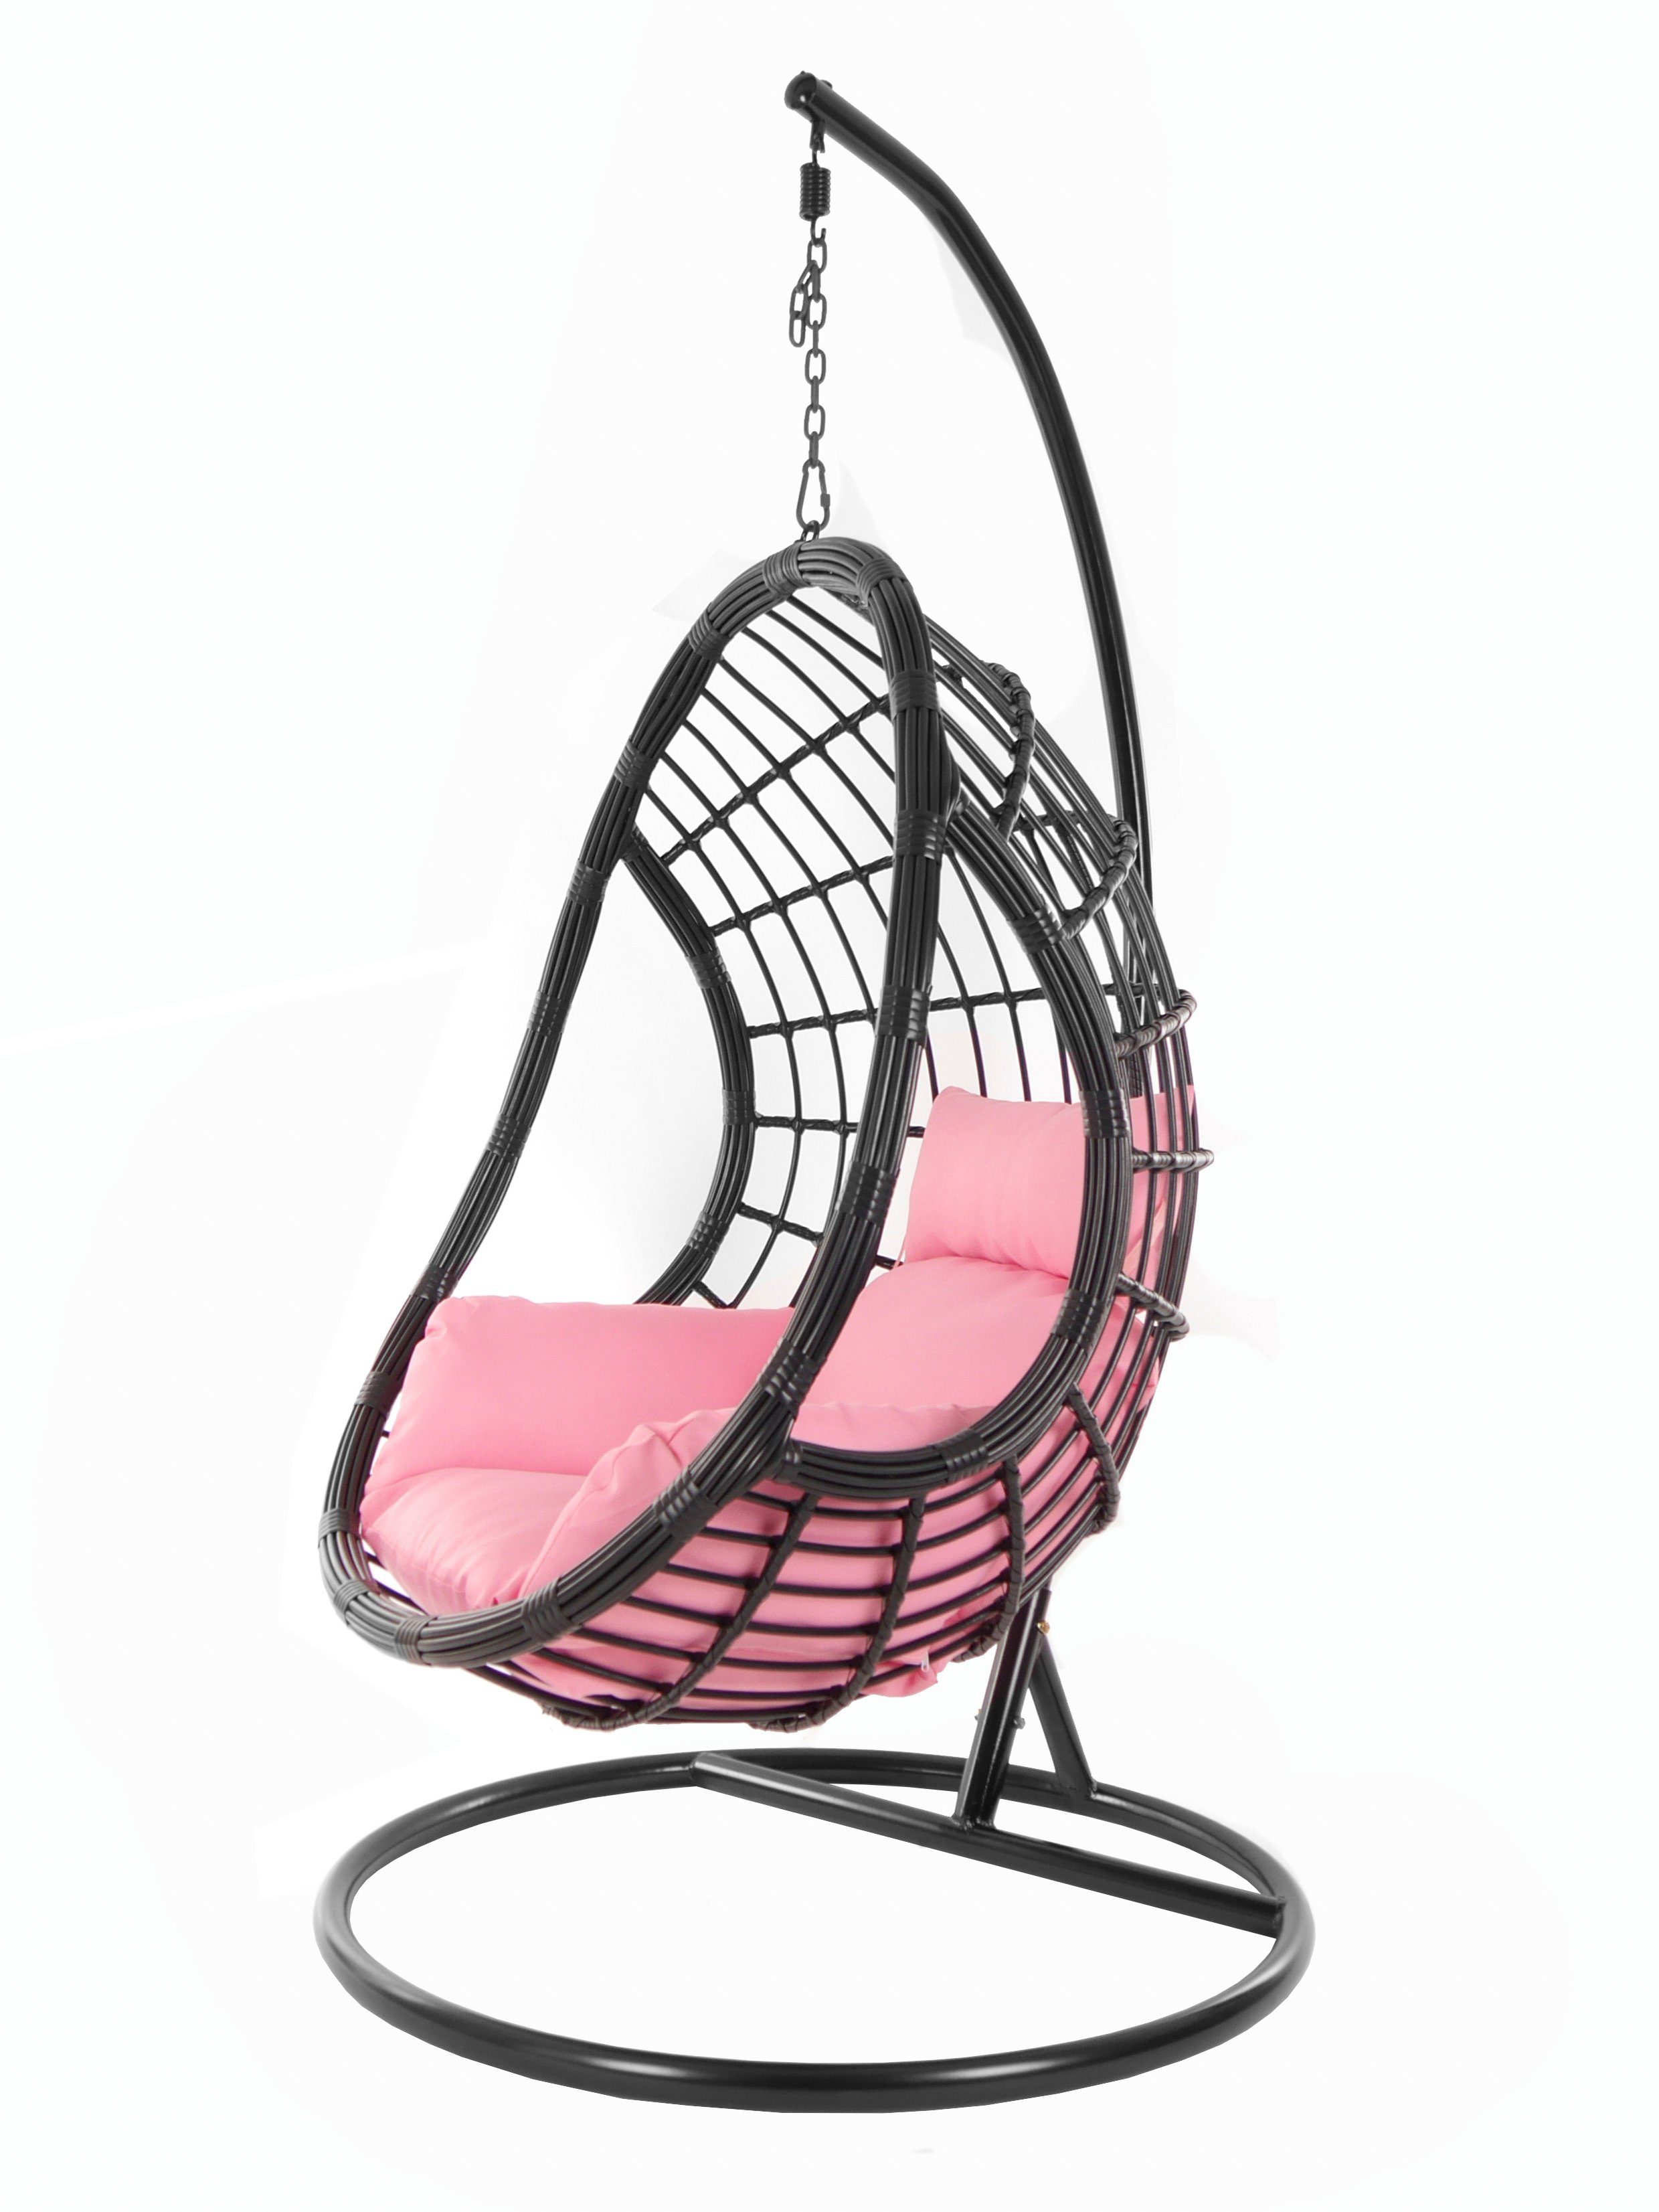 KIDEO Hängesessel PALMANOVA black, Schwebesessel, Swing Chair, Hängesessel mit Gestell und Kissen, Nest-Kissen rosa (3002 lemonade)